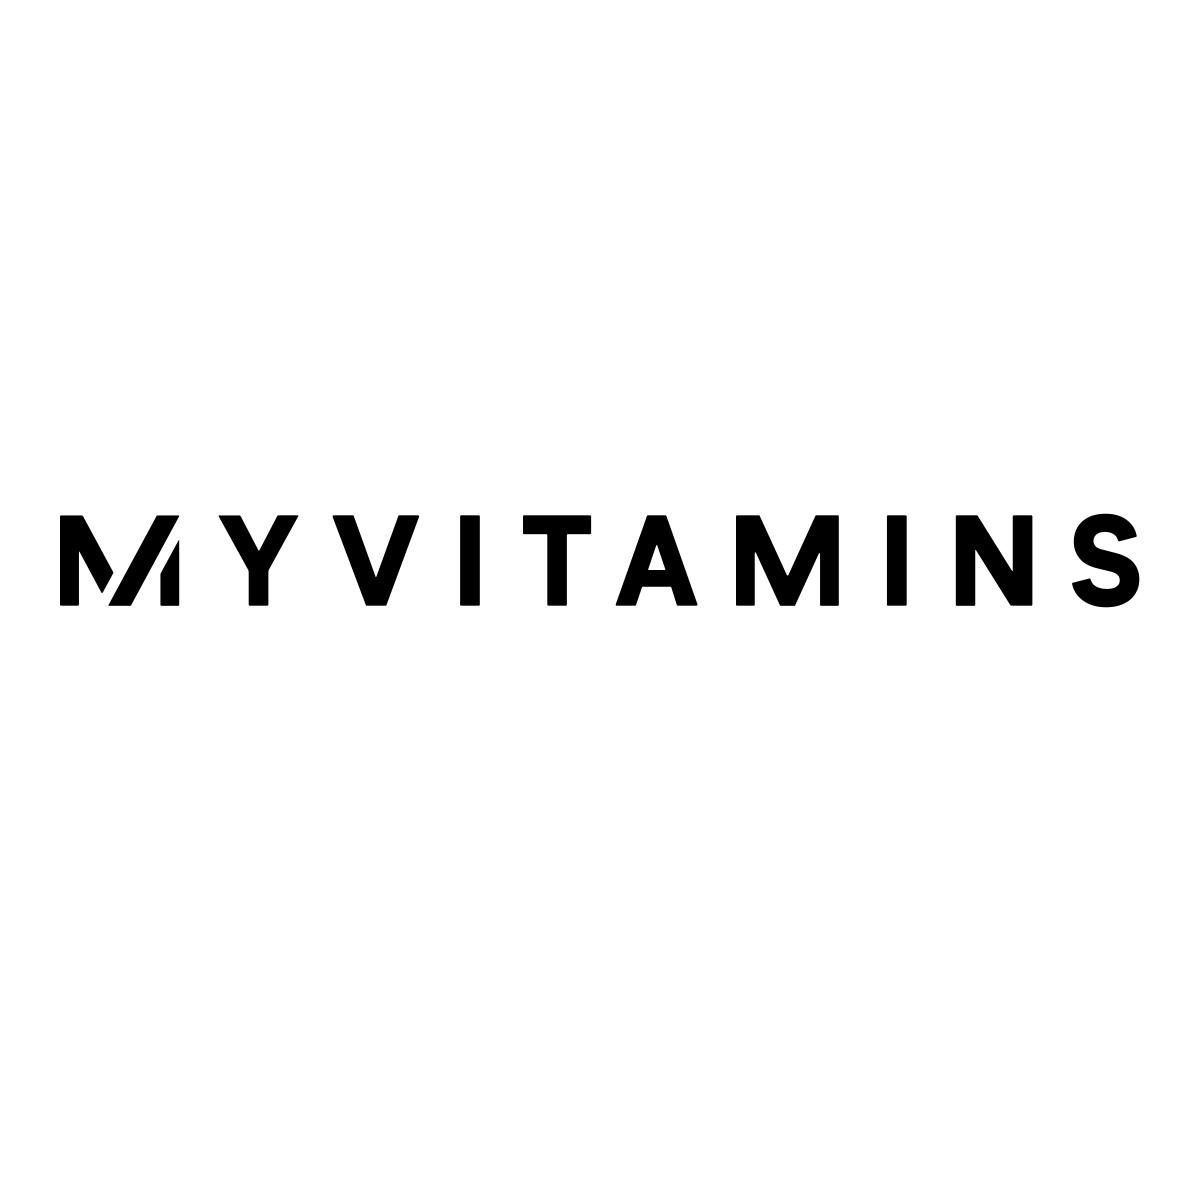 (c) Myvitamins.com